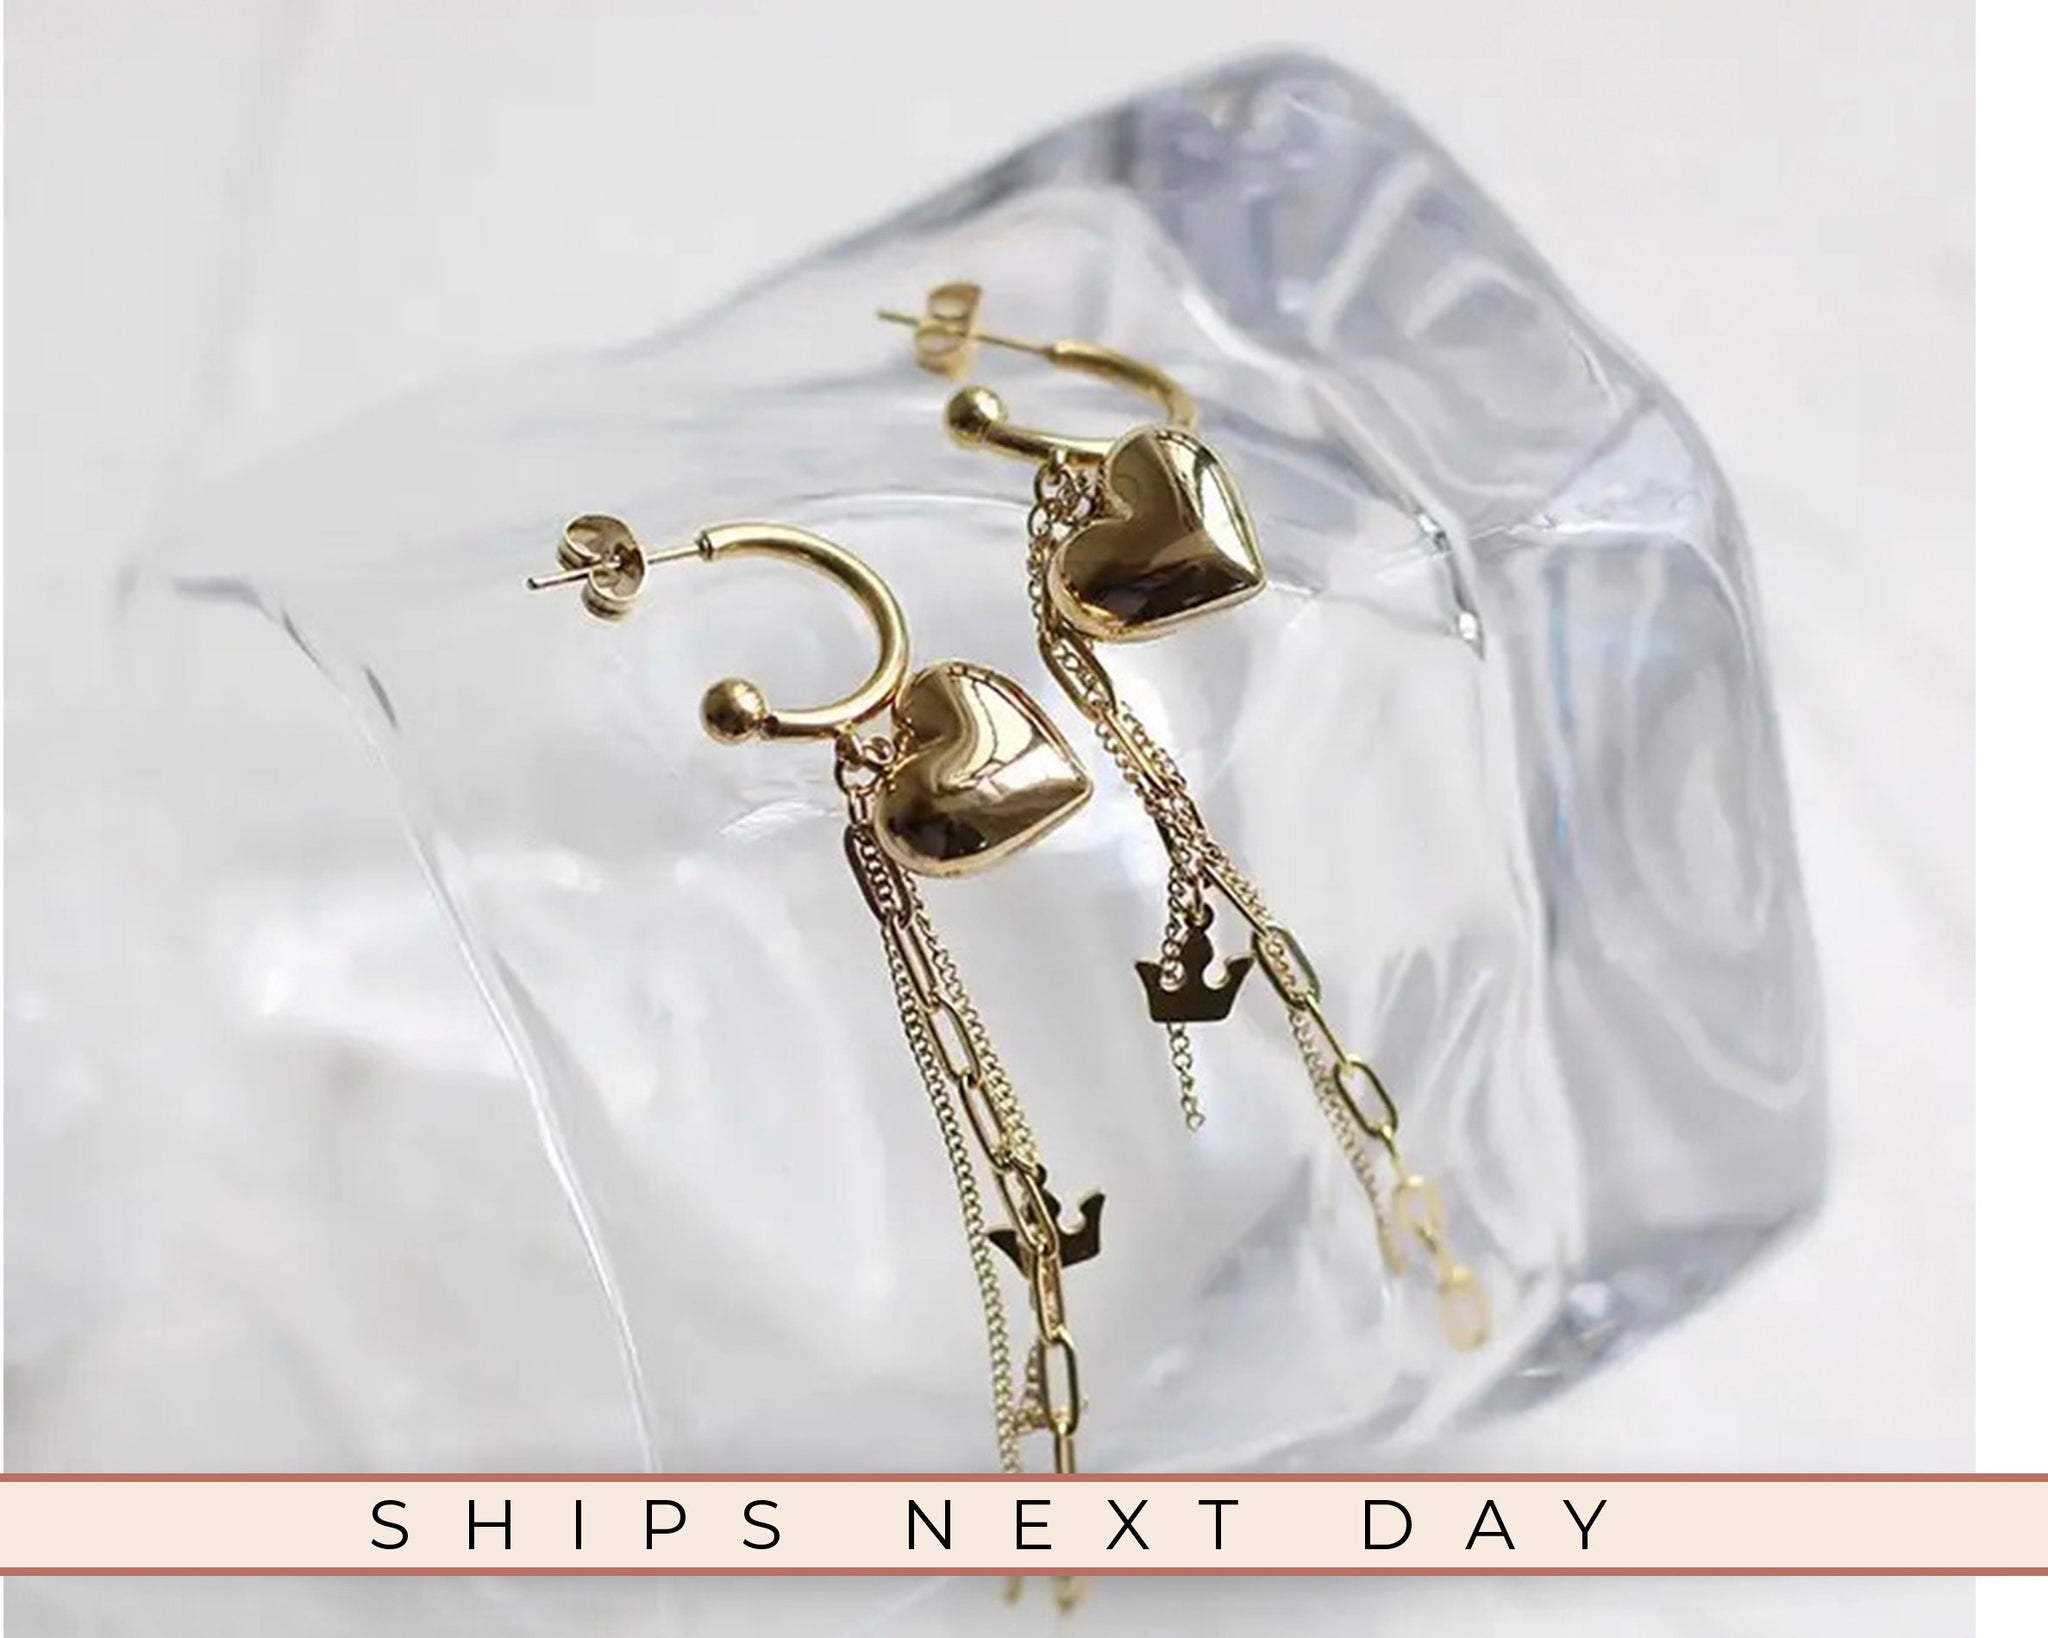 Heart Stud Earrings, 18K Gold Earrings, Tassel Earrings, Minimalist Earrings, Gift For Women, Cute Dainty Earrings, Earrings For Women